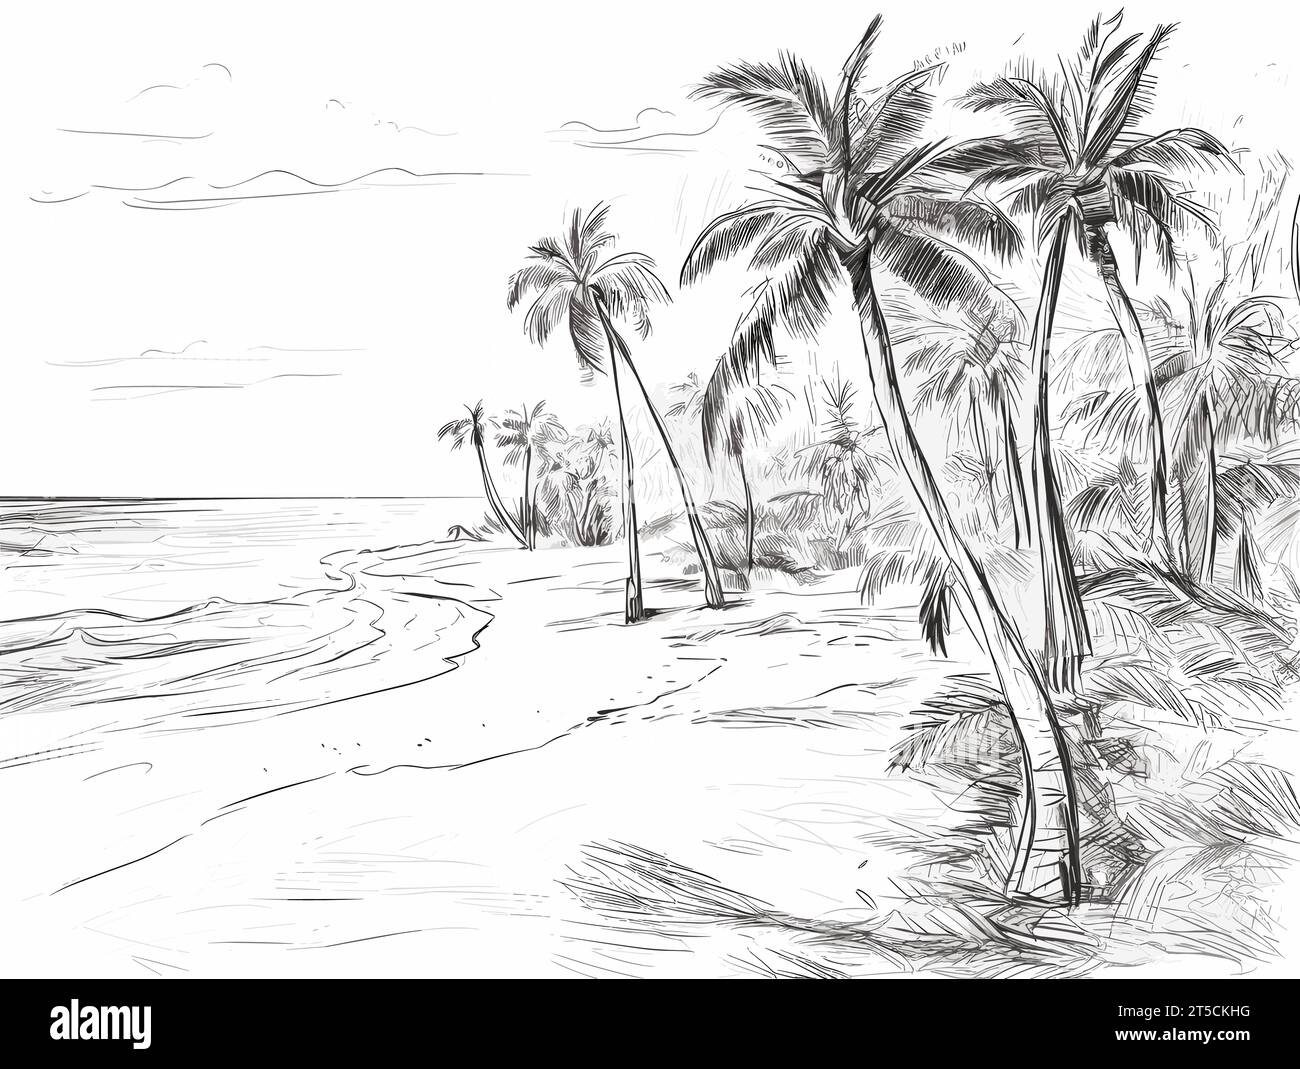 Zeichnung des tropischen Strandes in der Dominikanischen Republik Illustration getrennte, überzogene Linien. Stock Vektor